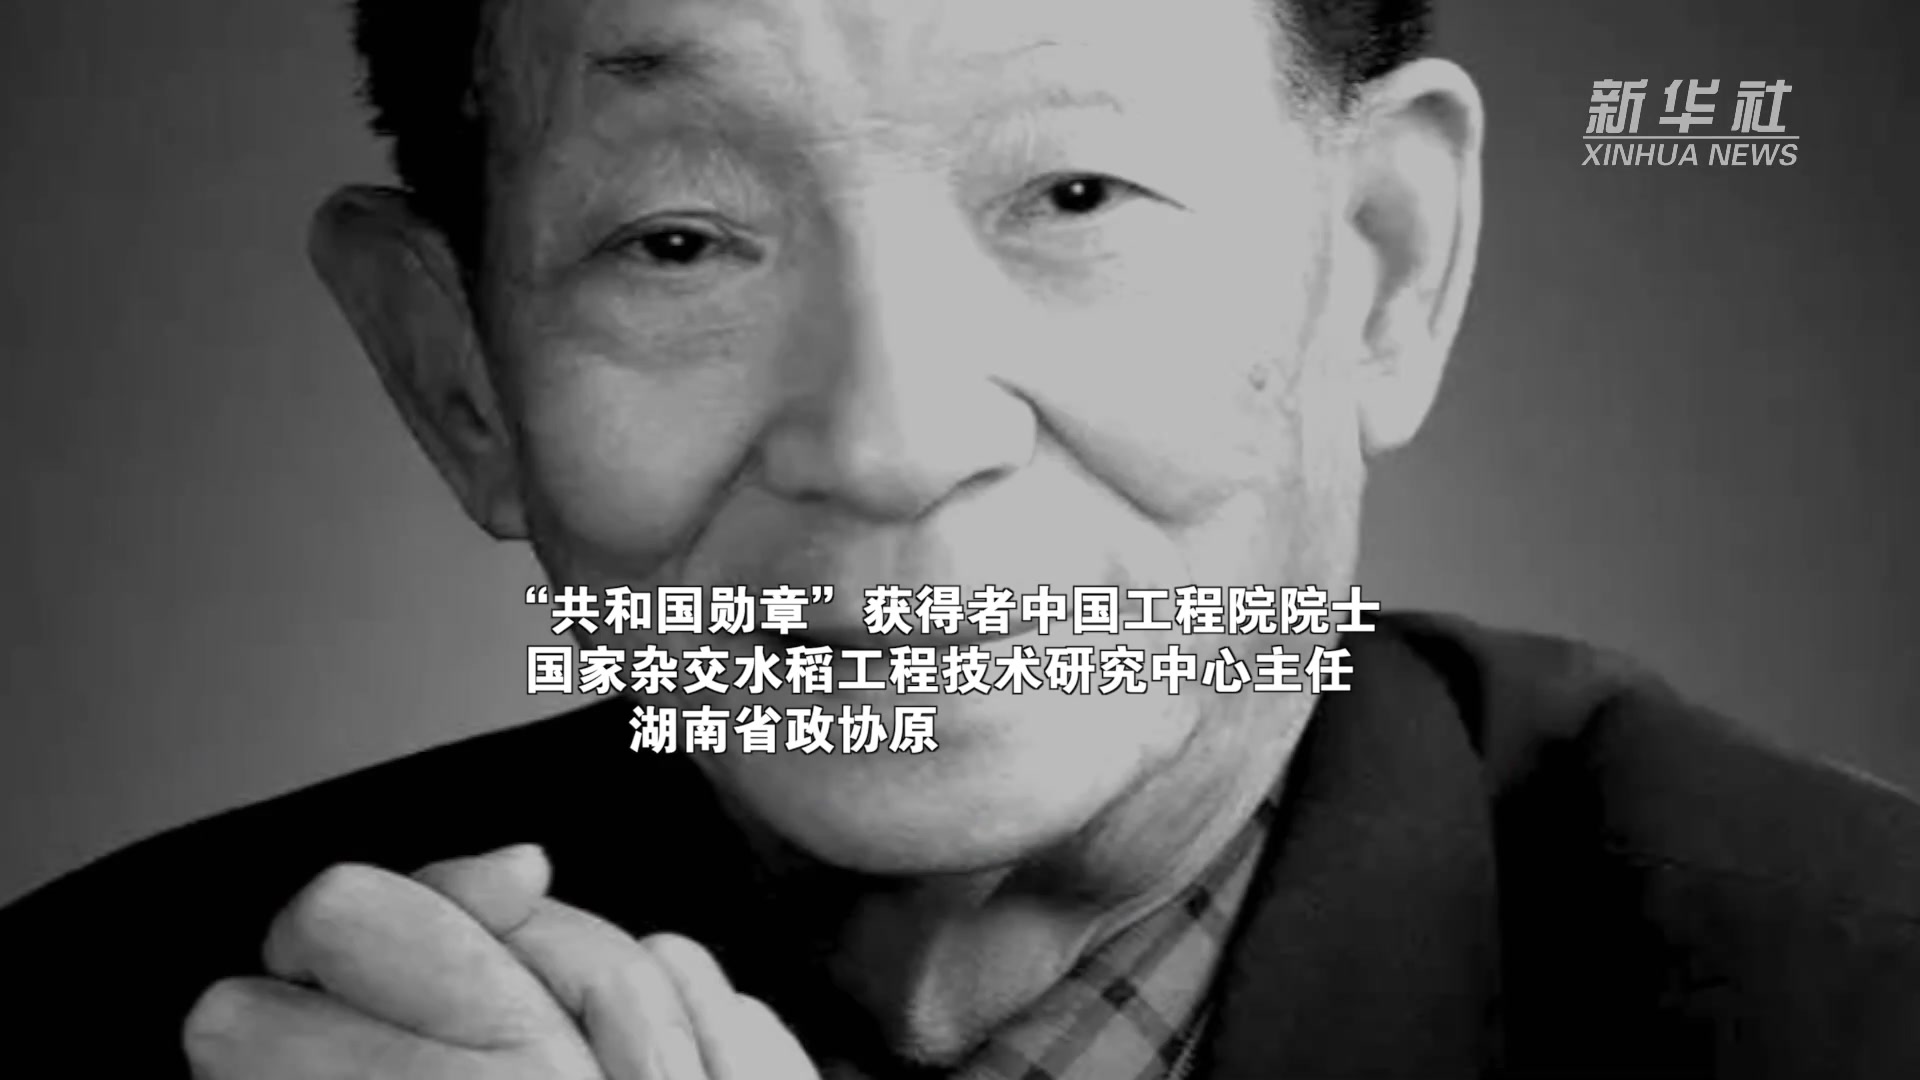 沉重悼念 “水稻之父”袁隆平 因多器官功能衰竭逝世 享年91岁